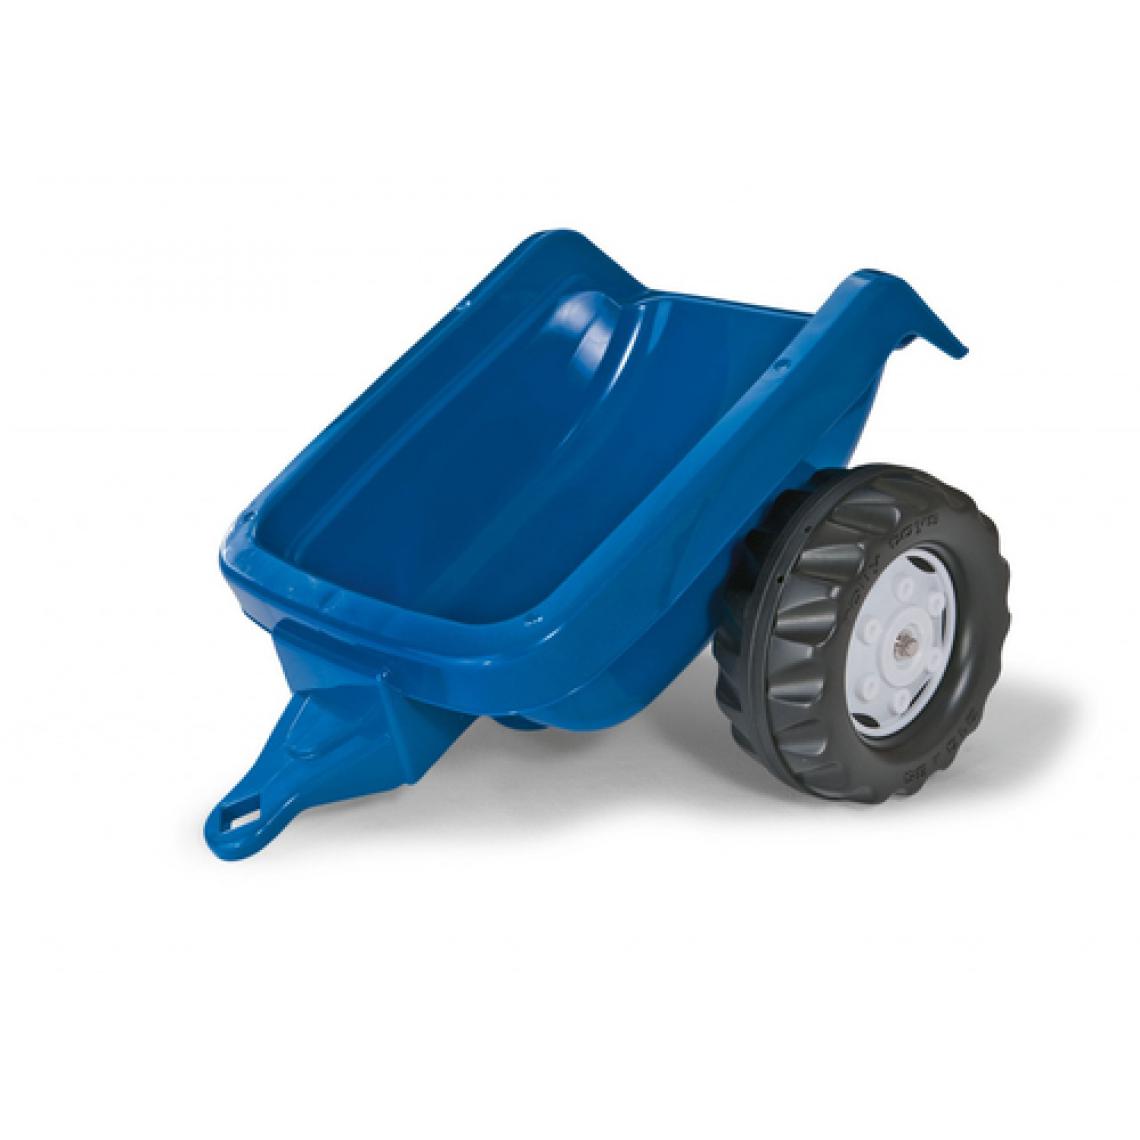 Rolly Toys - Rolly Toys Remorque pour Tracteur Bleue - Véhicule à pédales